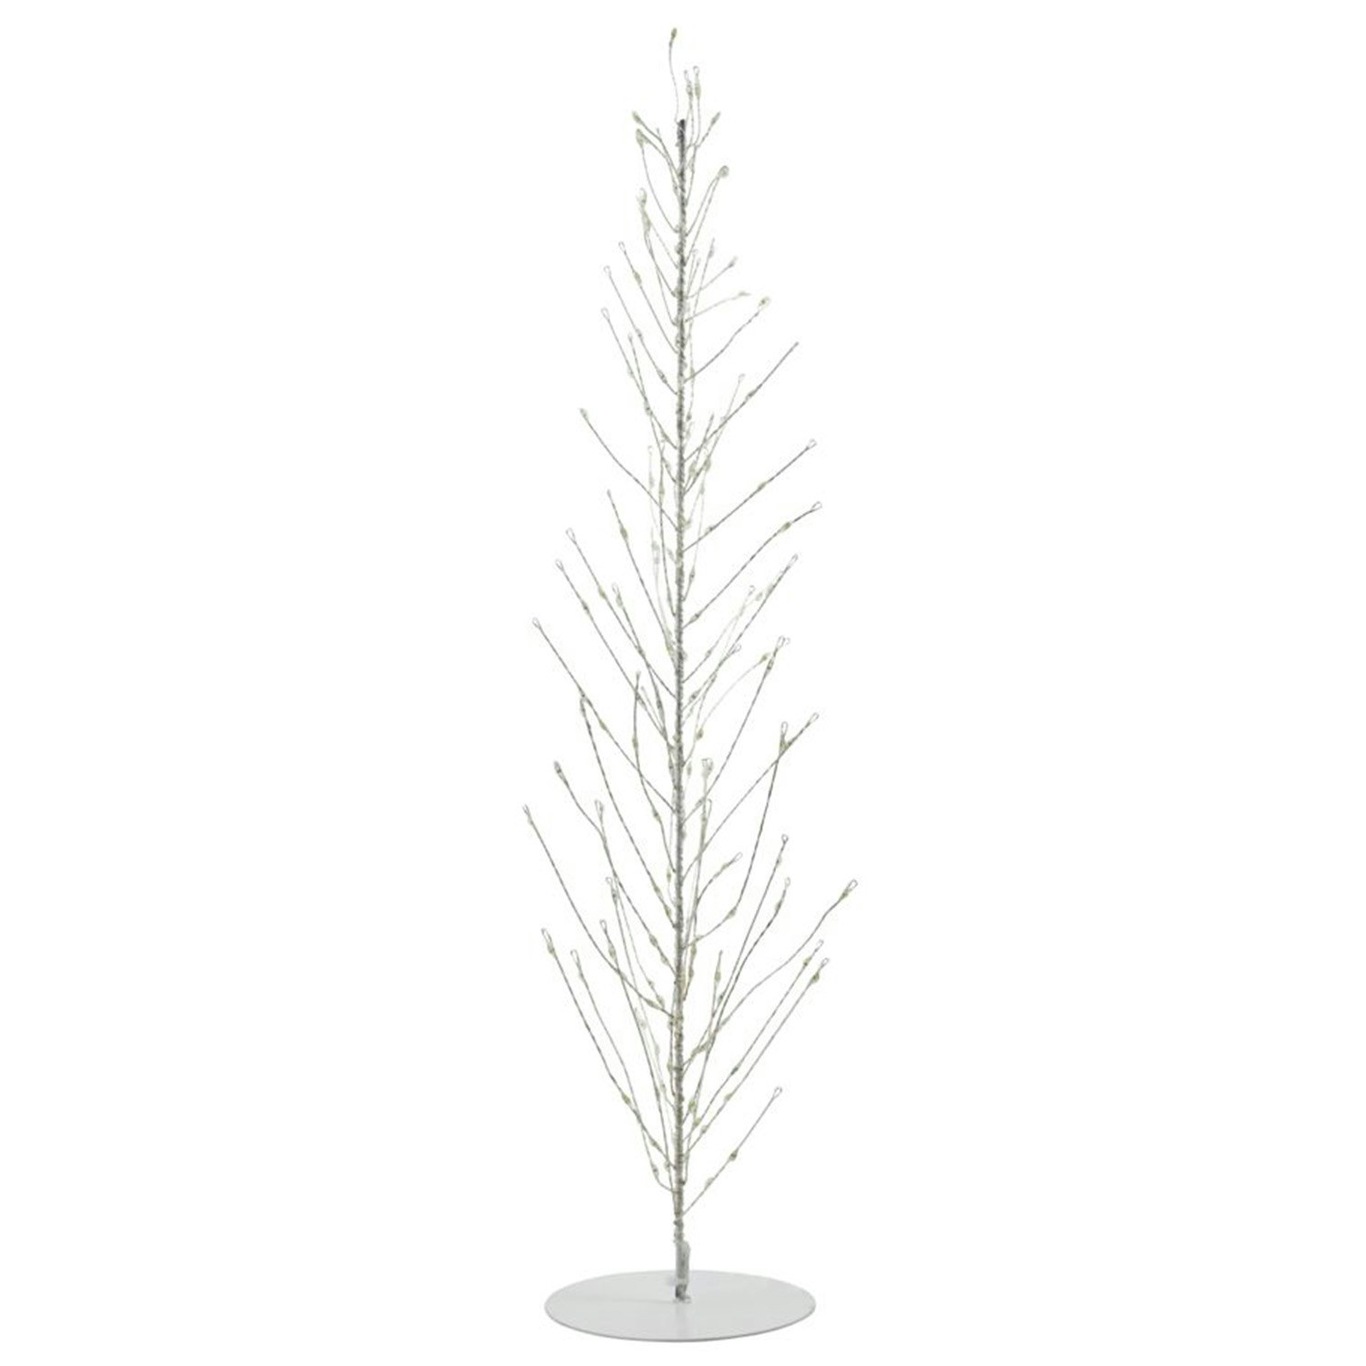 Glow Juletræ Hvidt, 60 cm